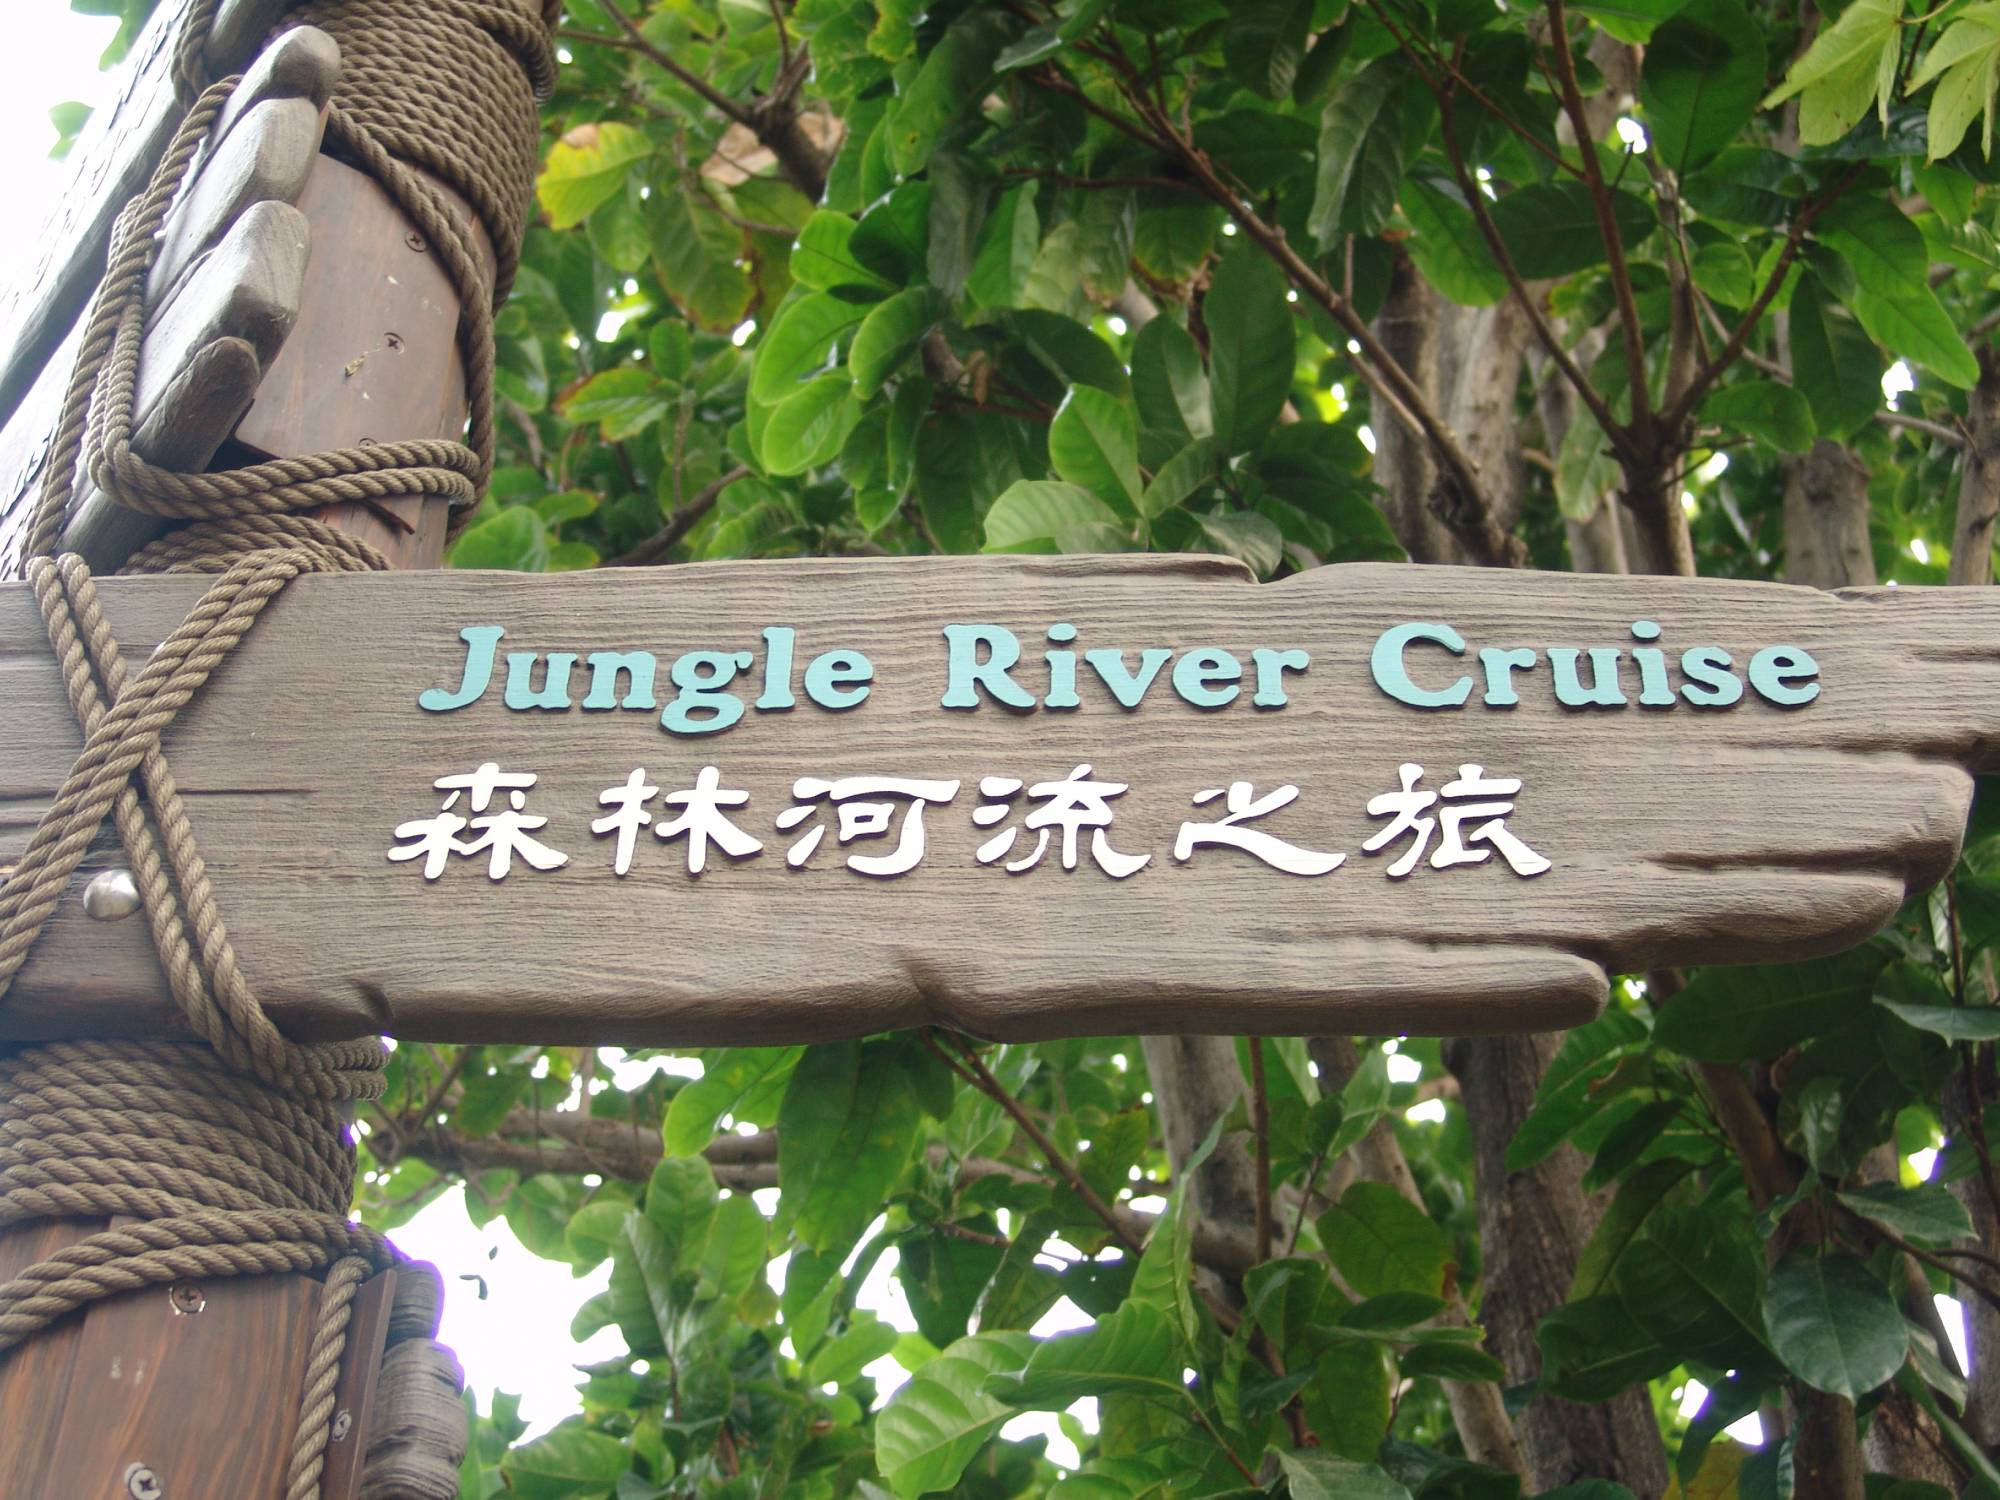 Hong Kong Disneyland - signage